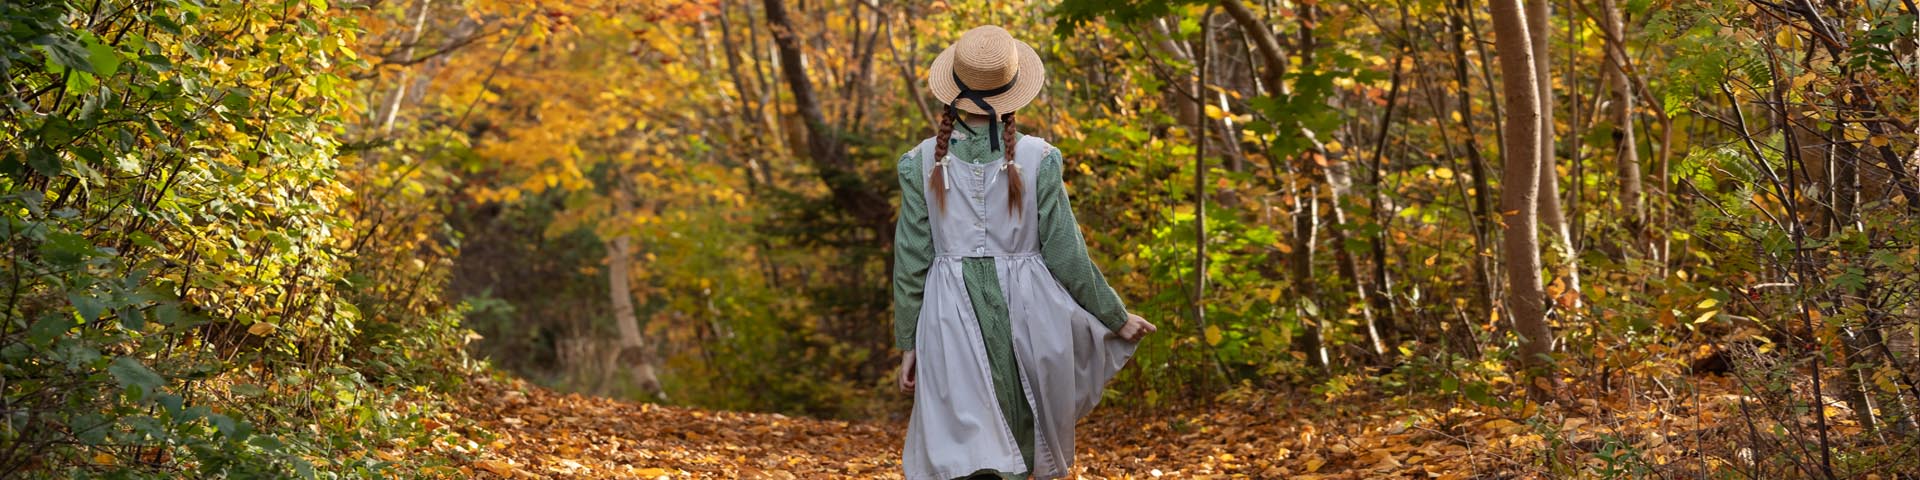 Une jeune femme habillée comme le personnage fictif d'Anne Shirley marche dans une allée en terre battue à l'automne.